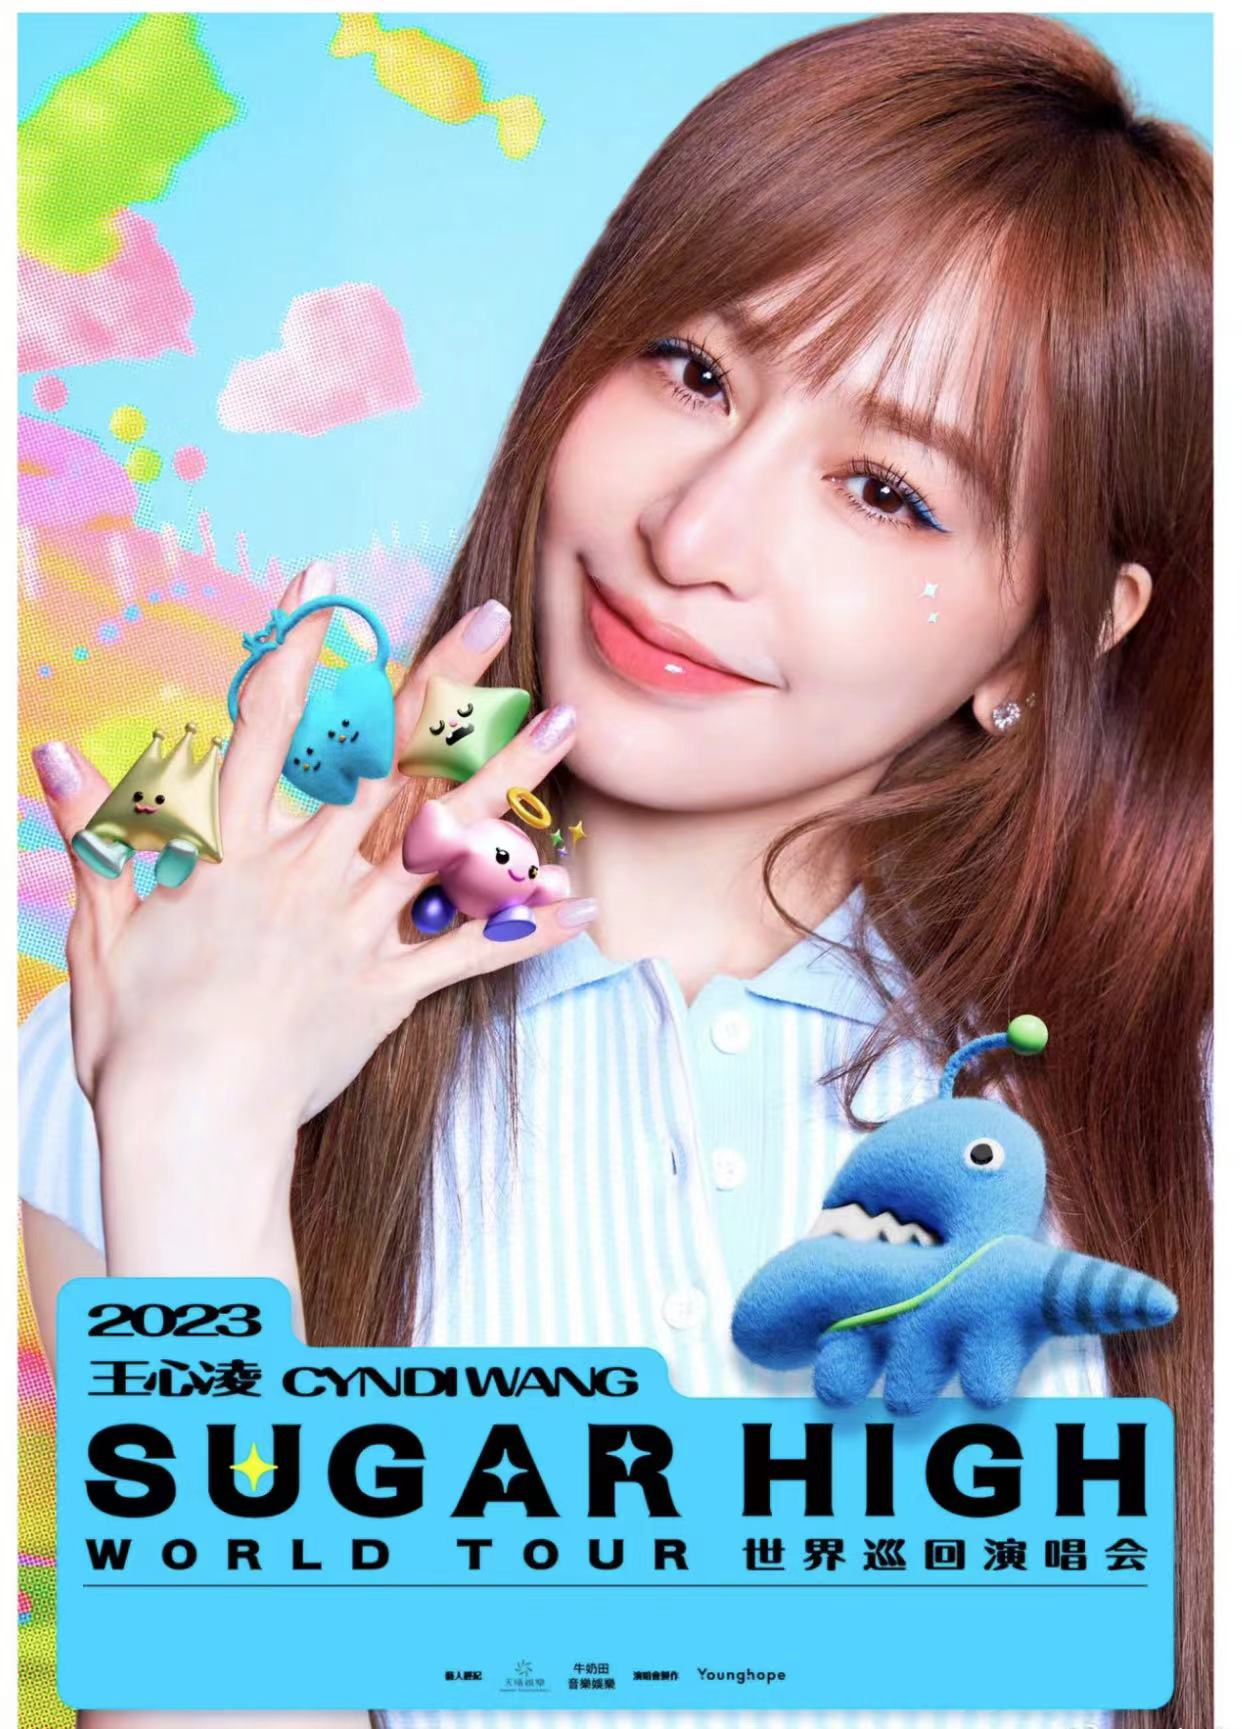 [长沙]王心凌 2023「sugar high」巡回演唱会-长沙站